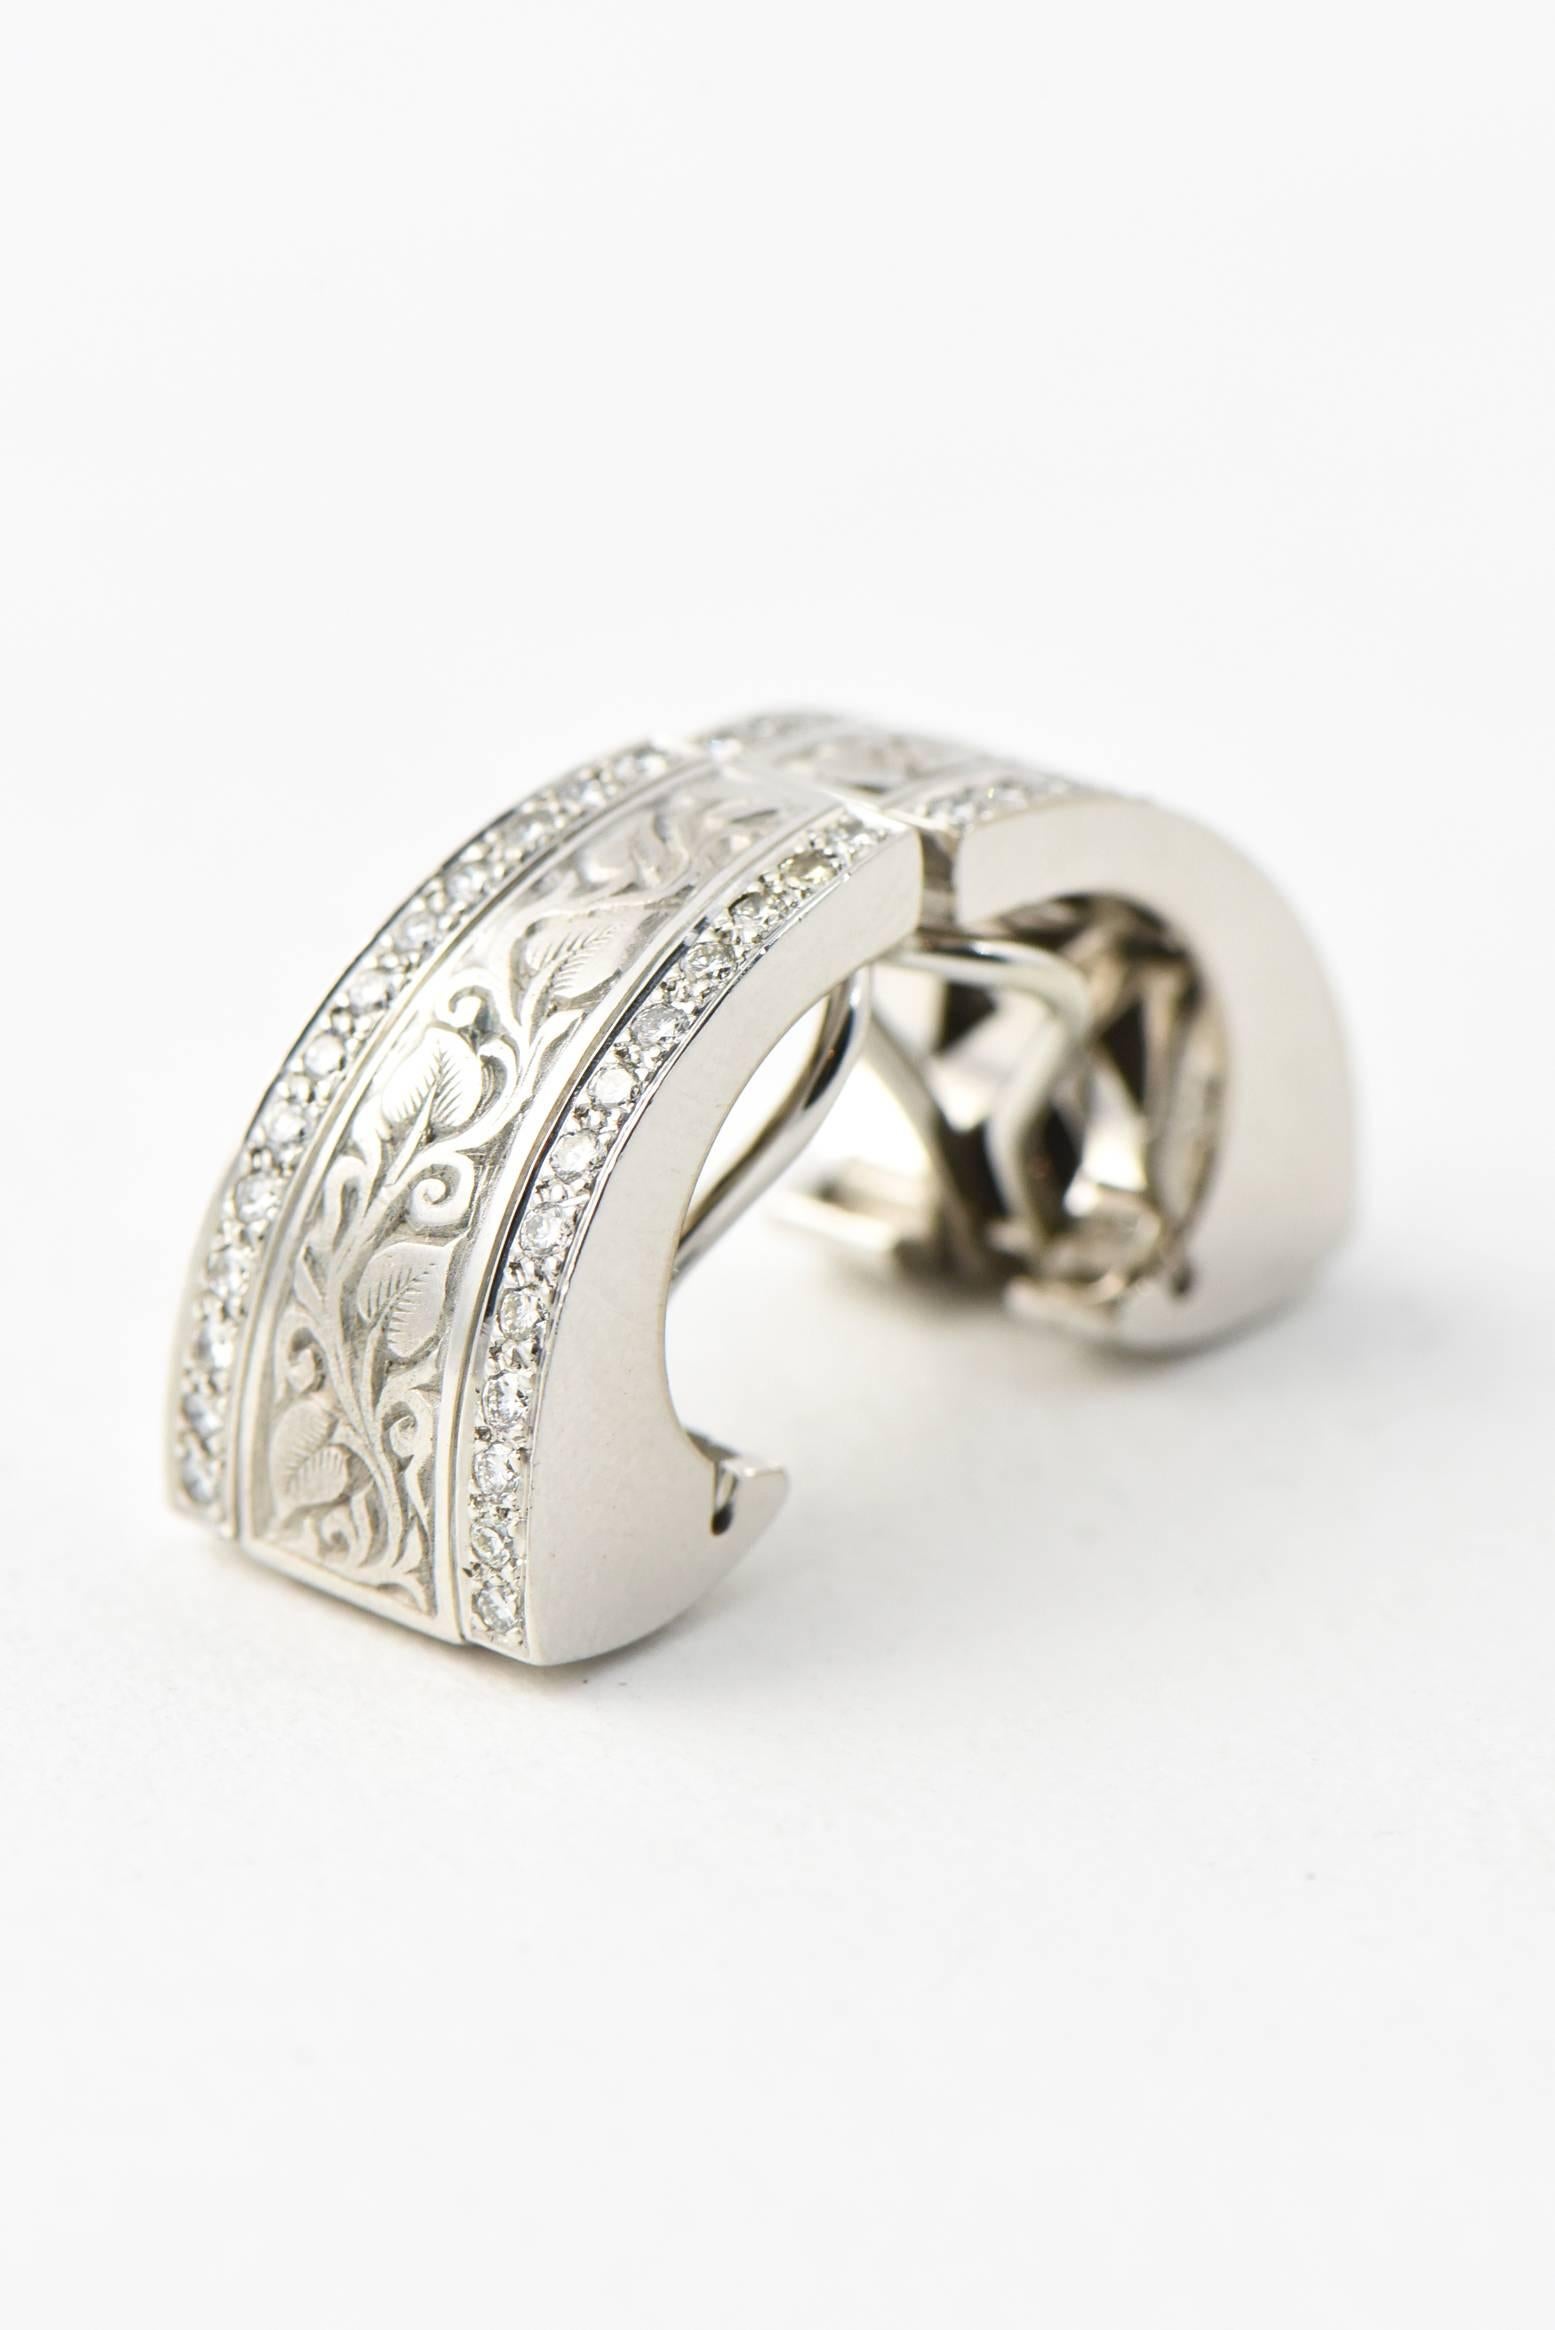 Women's Engraved Vine Design Gold Earrings with Diamond Edges